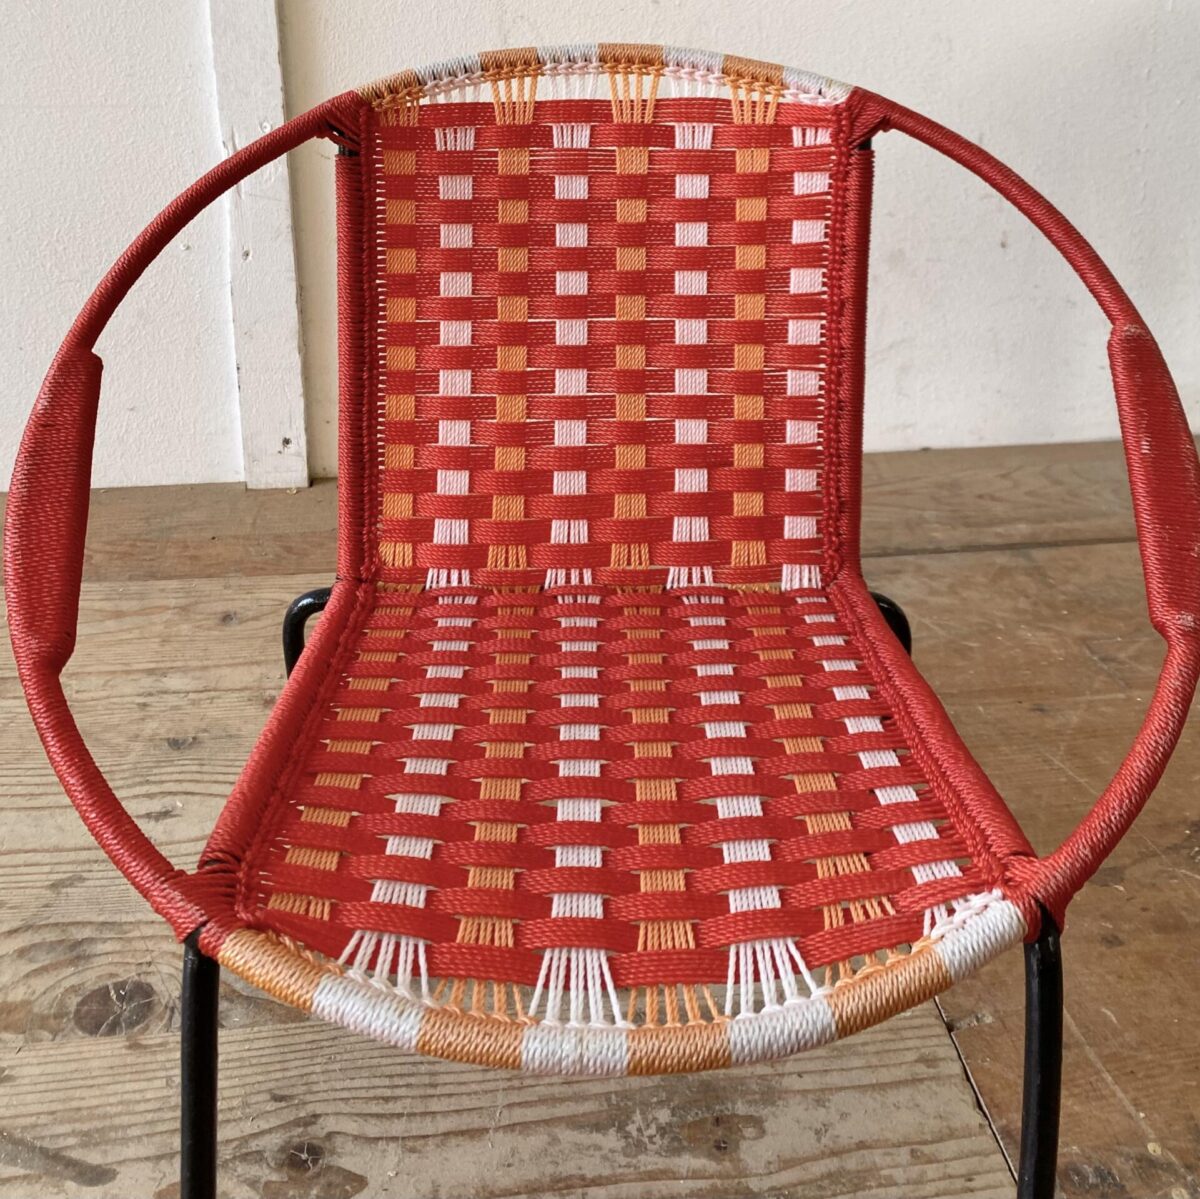 Deuxieme.shop 60er Jahre Baloon Chair. Kleiner Kinder Sessel. Durchmesser 42cm Sitzhöhe 20cm. Das Metallgestell ist schwarz lackiert, die Bespannung ist in gutem Zustand. 